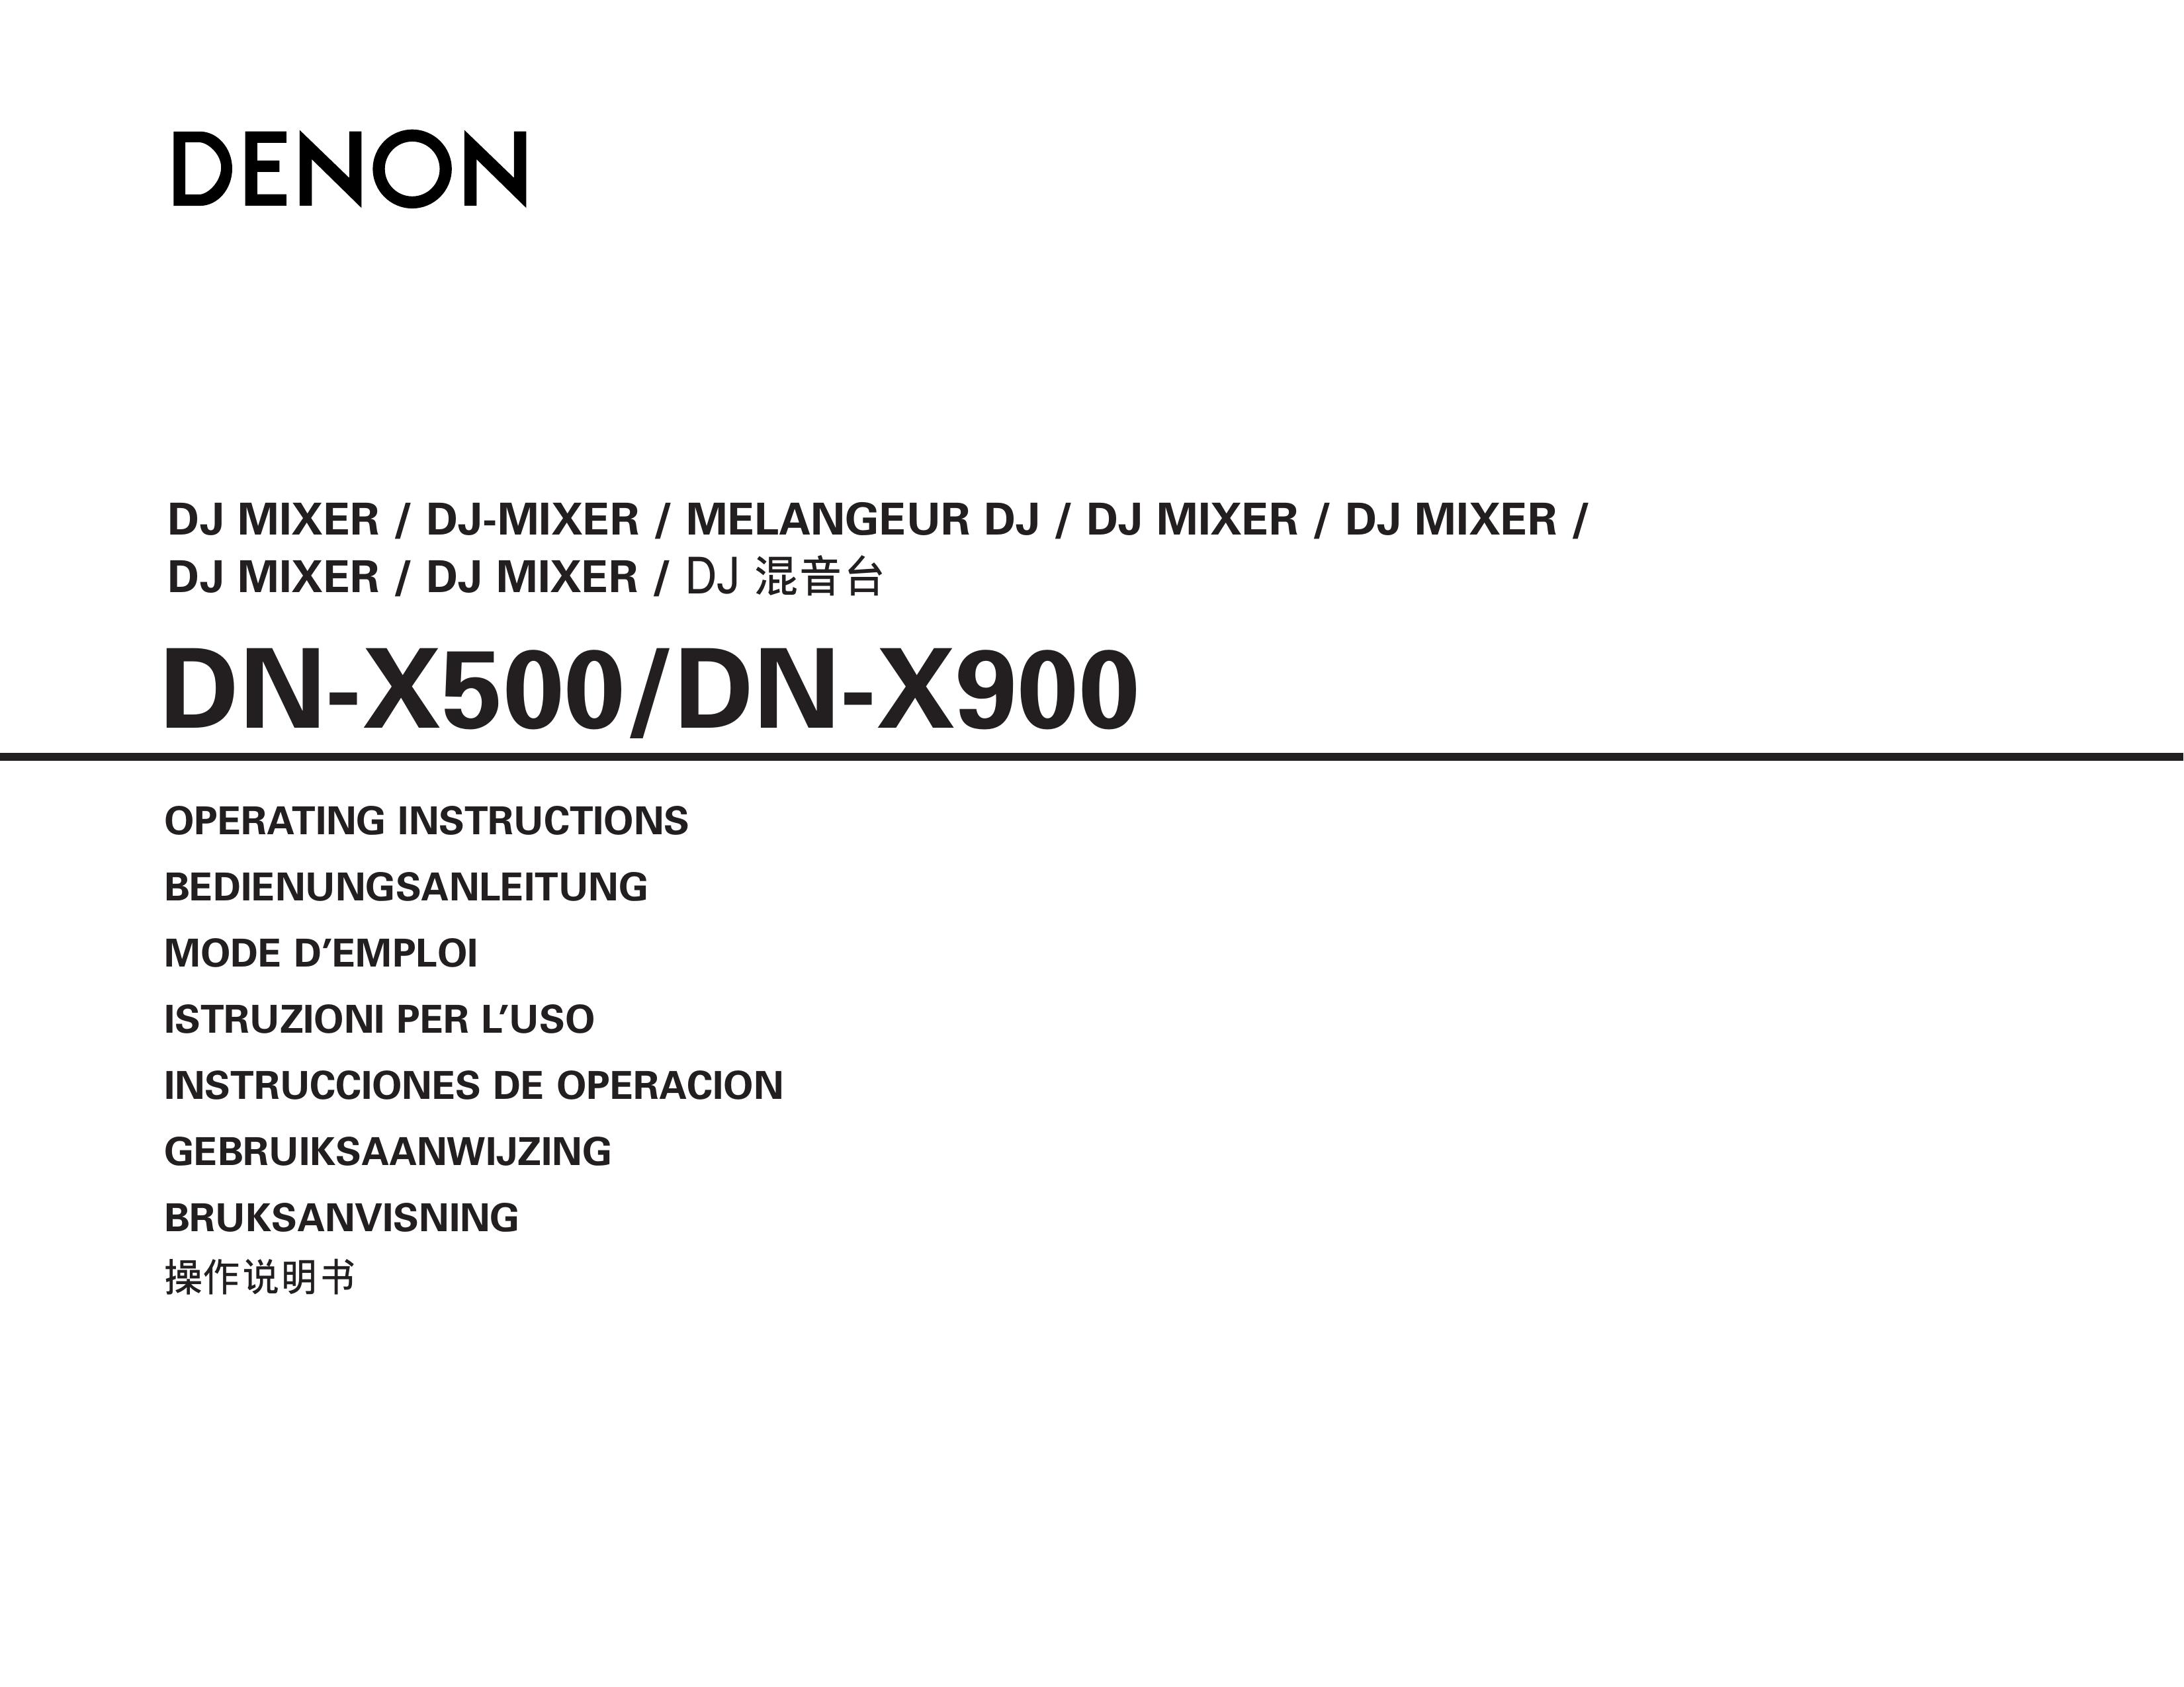 Denon DN-X900 DJ Equipment User Manual